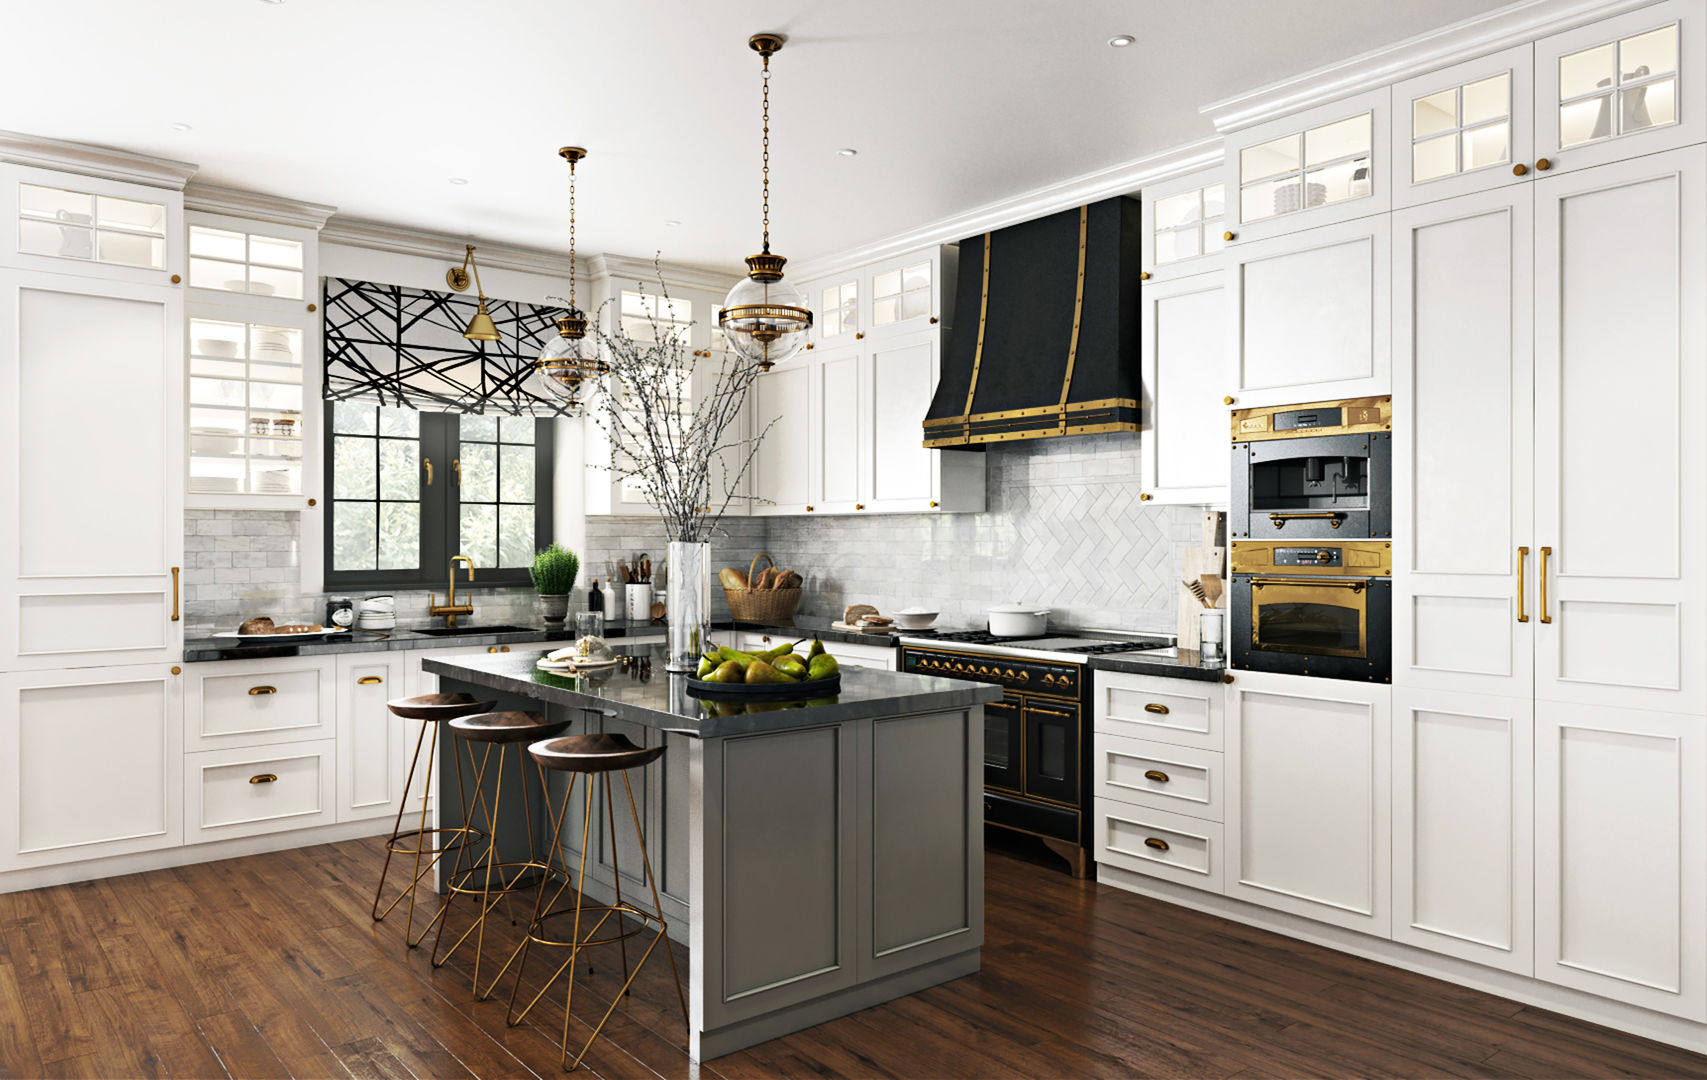 Кухня «Вирджиния», Decolabs Home Decolabs Home Кухня в стиле минимализм кухня,белая кухня,вытяжка,остров для кухни,кухонный шкаф,настенные шкафы,освещение кухни